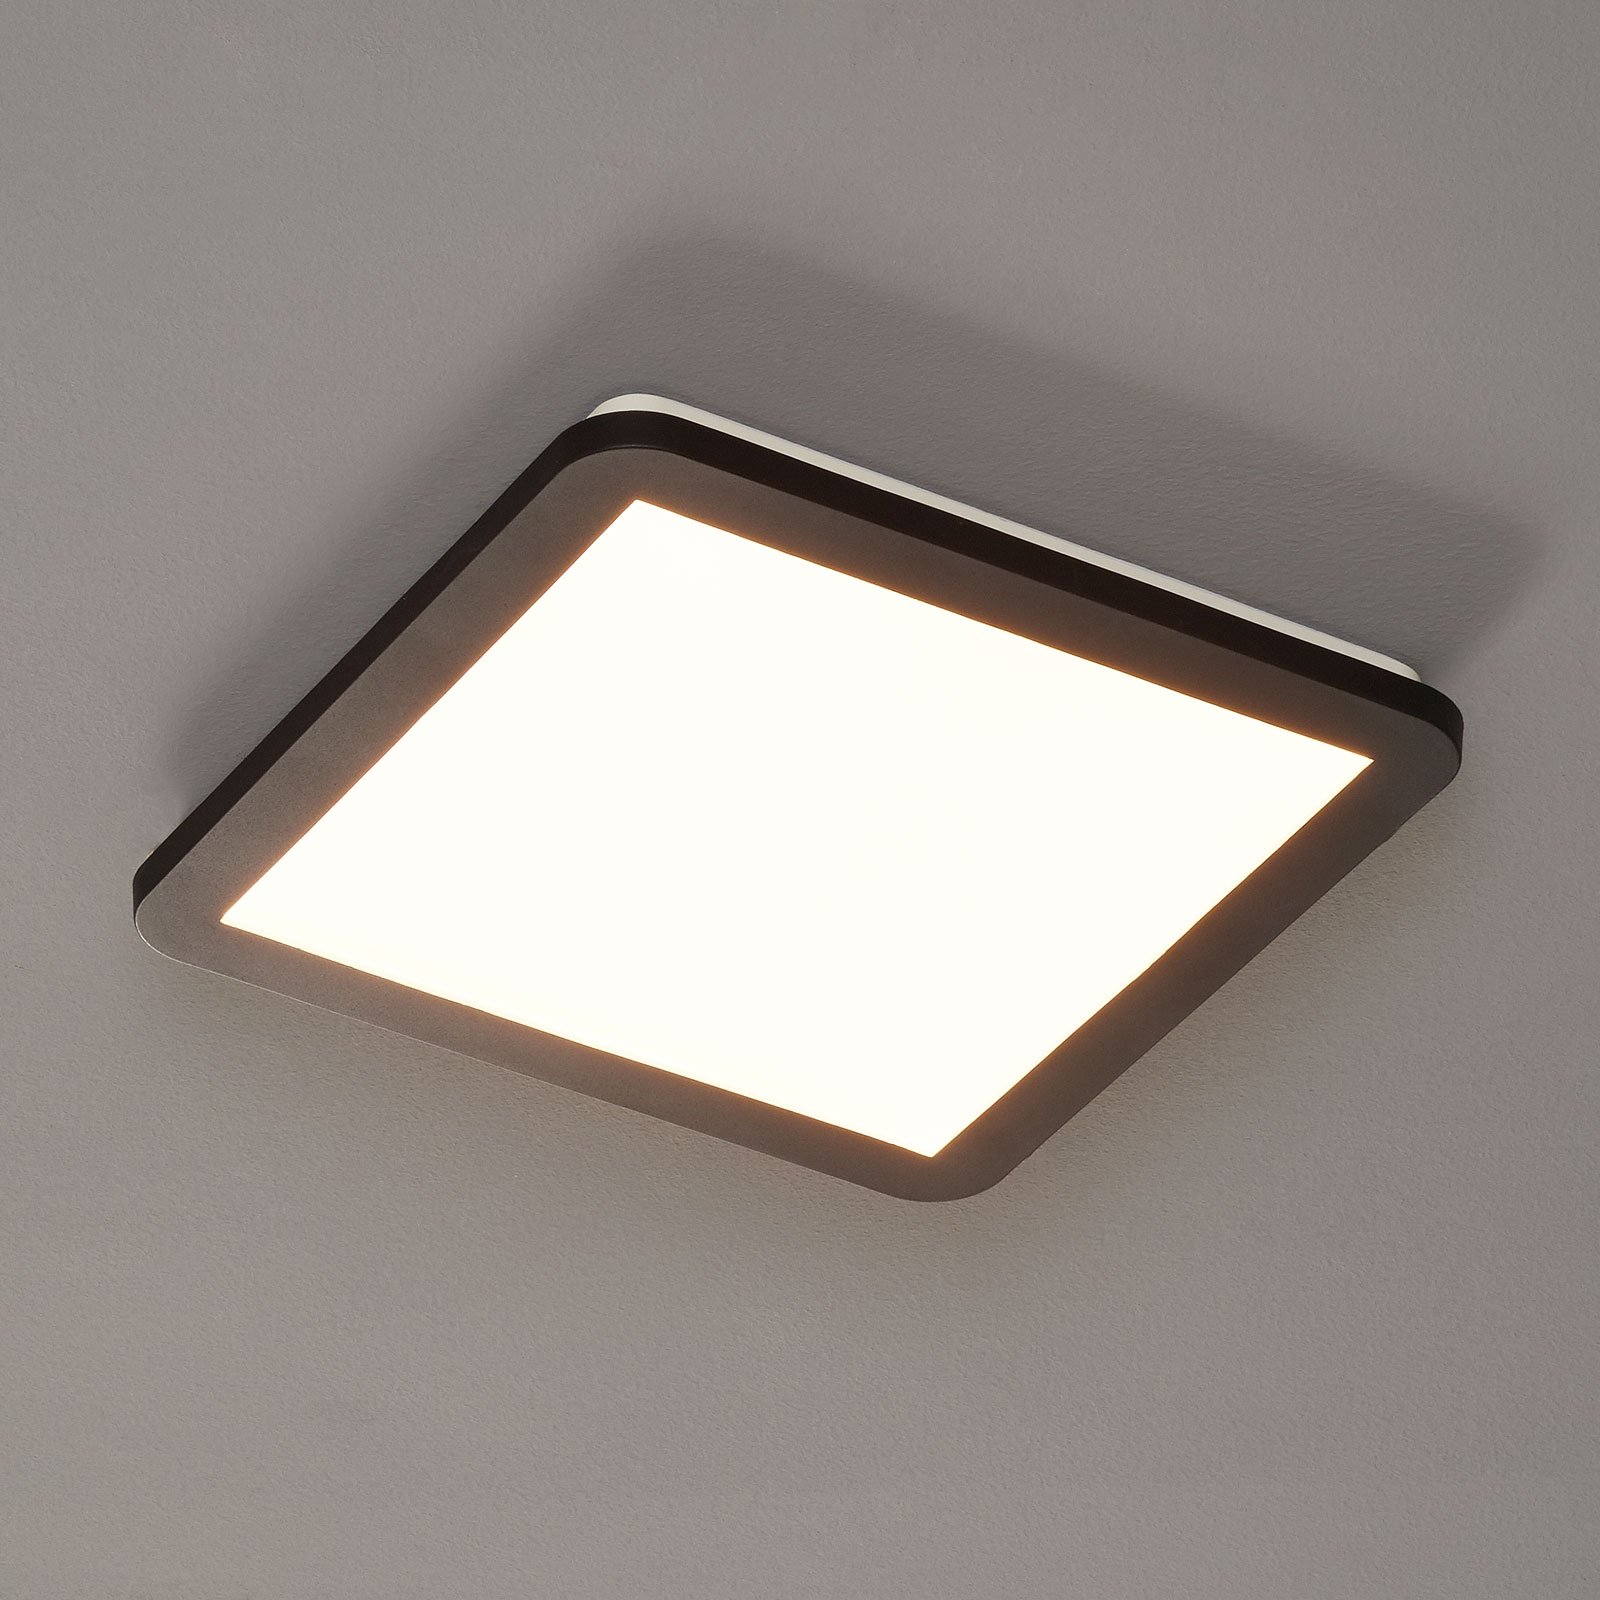 LED lámpa Camillus, négyzet alakú, 30 cm-es